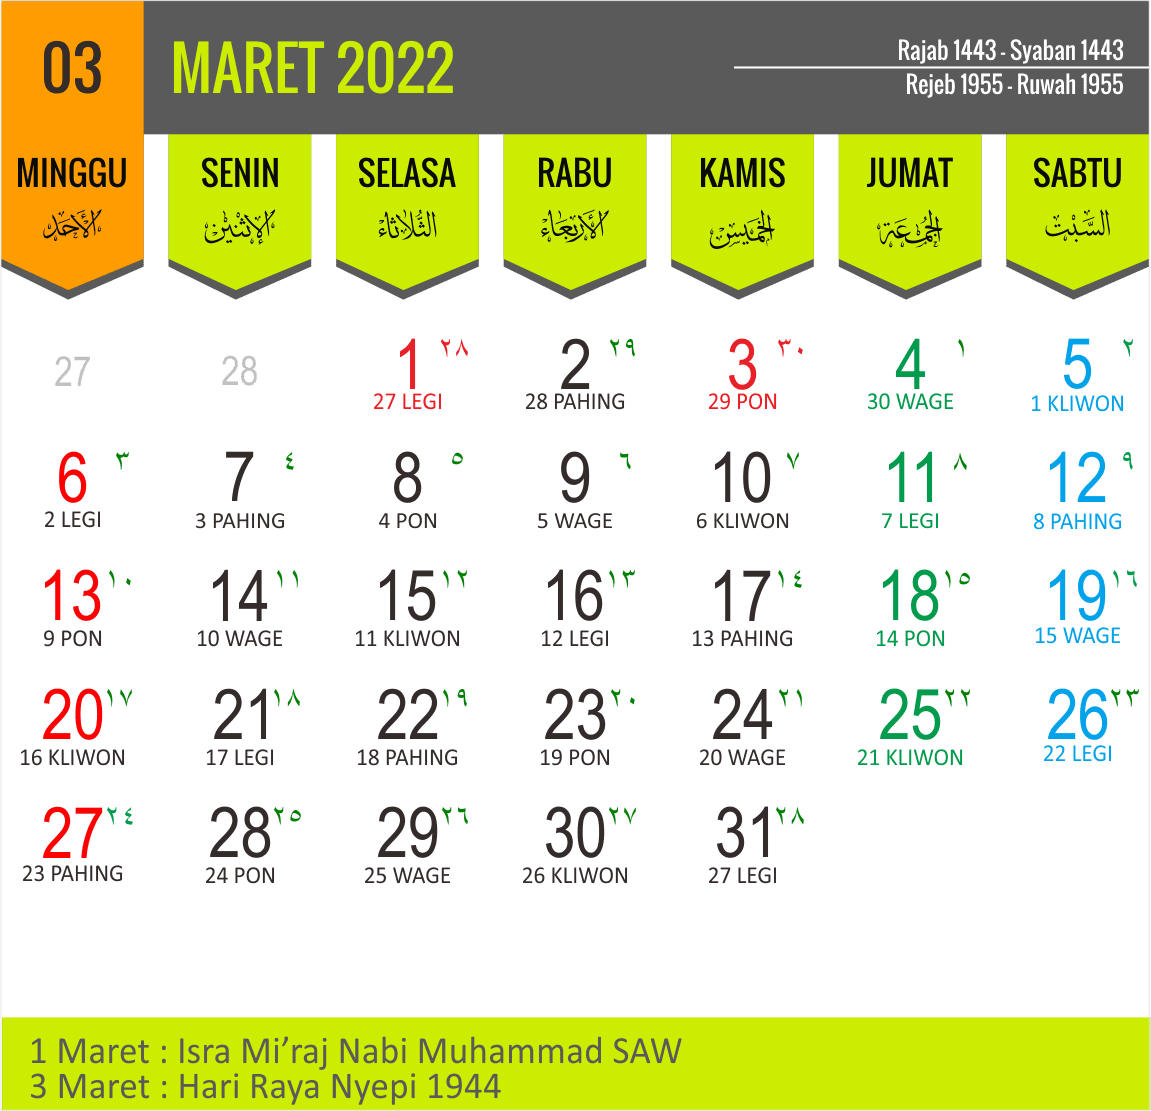 Jawa kalender 2022 Kalender Jawa